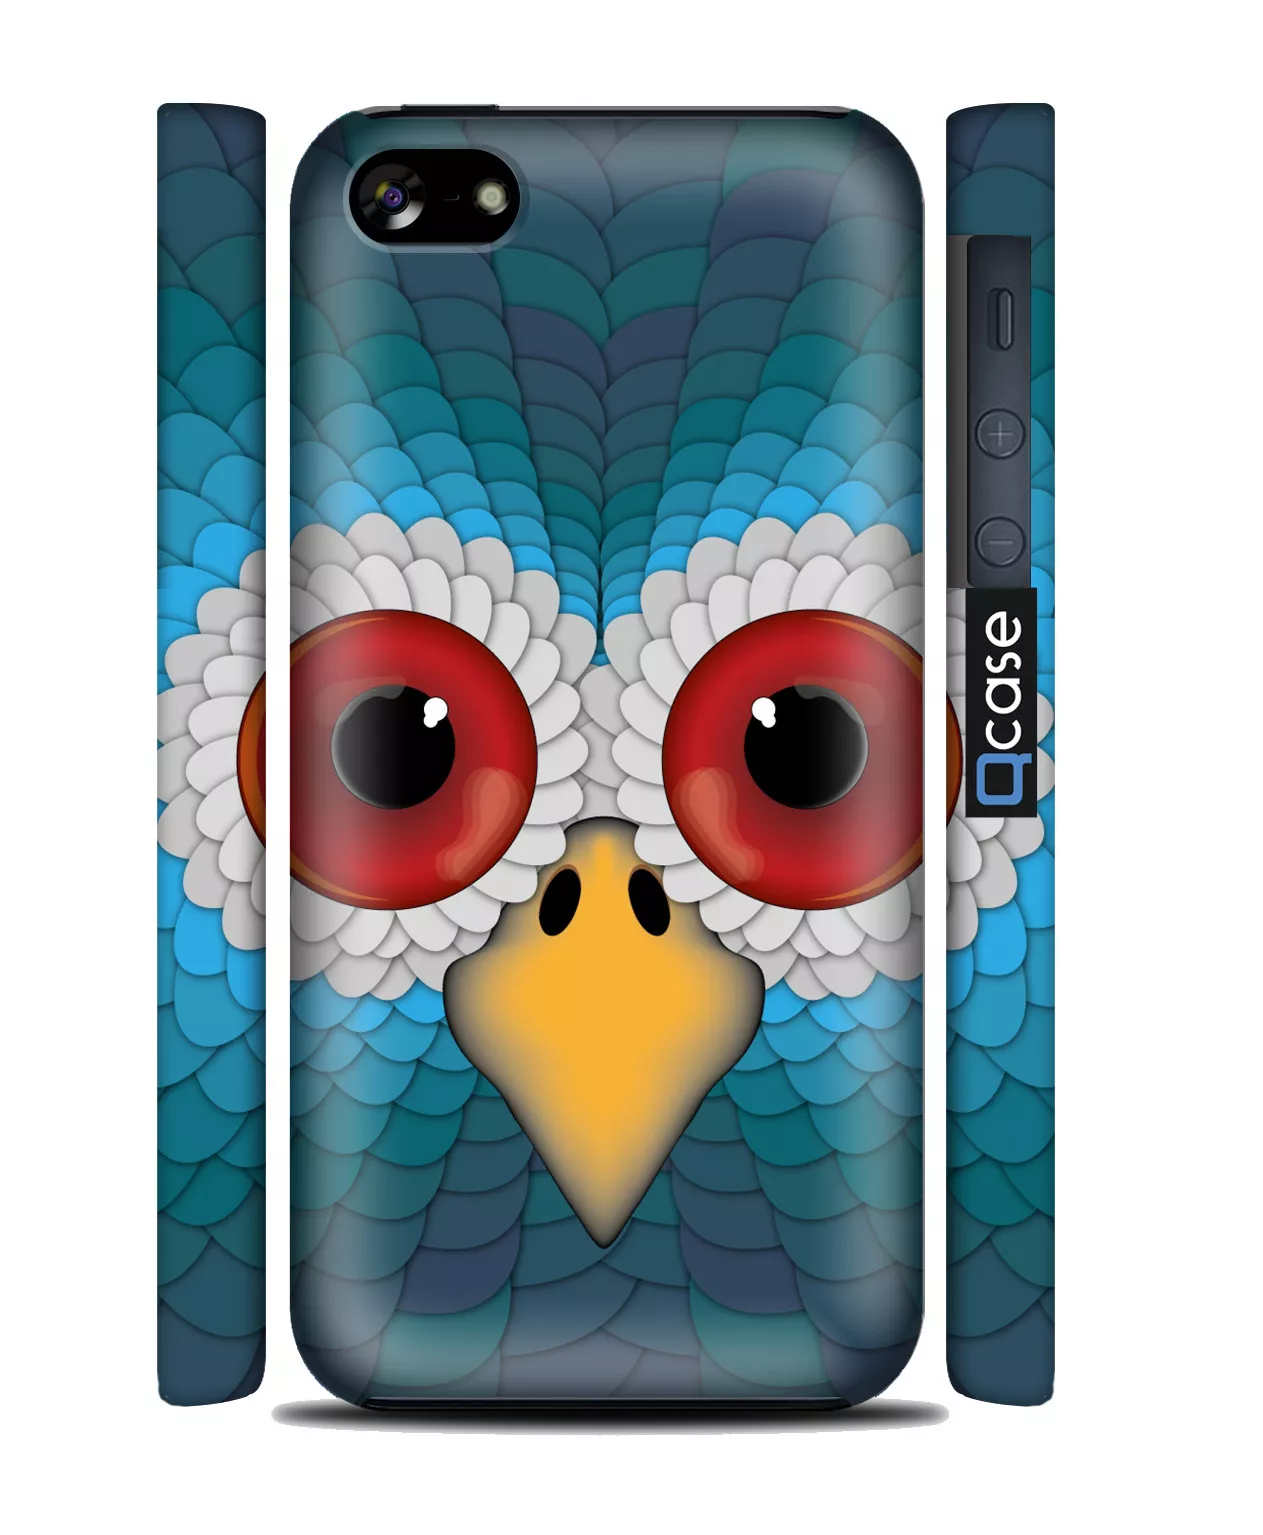 Купить чехол со смешной совой для iPhone 5C | 3D-Печать - Owl